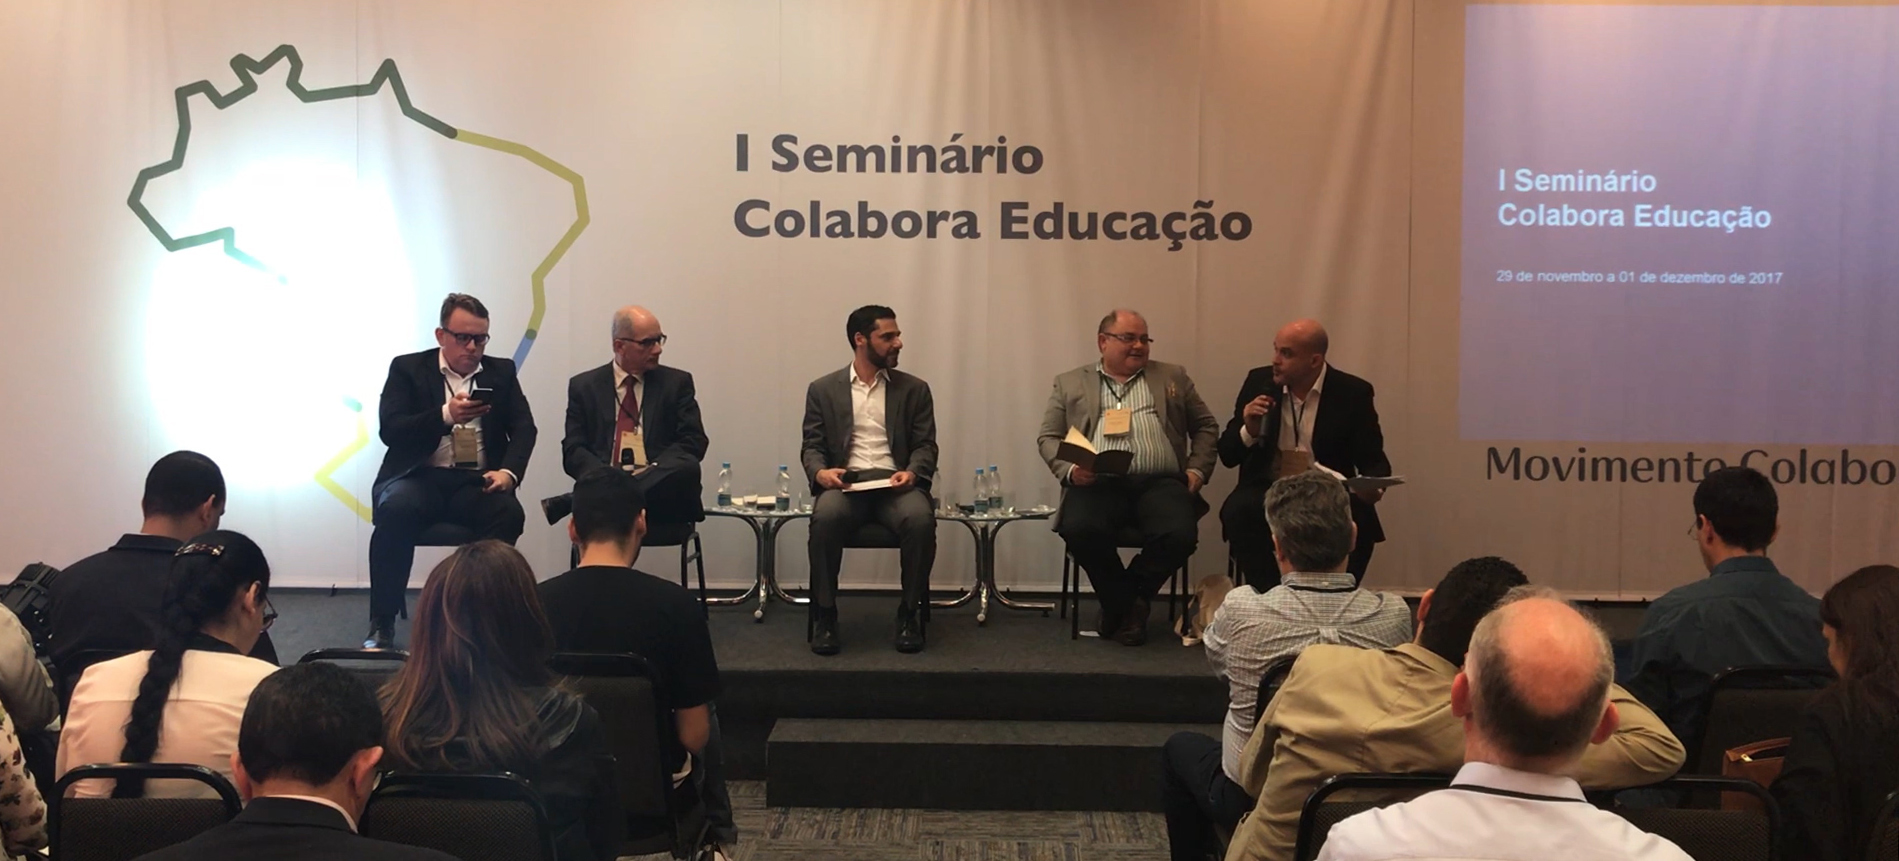 Colaboração entre estados e municípios é caminho para melhorar indicadores da educação brasileira